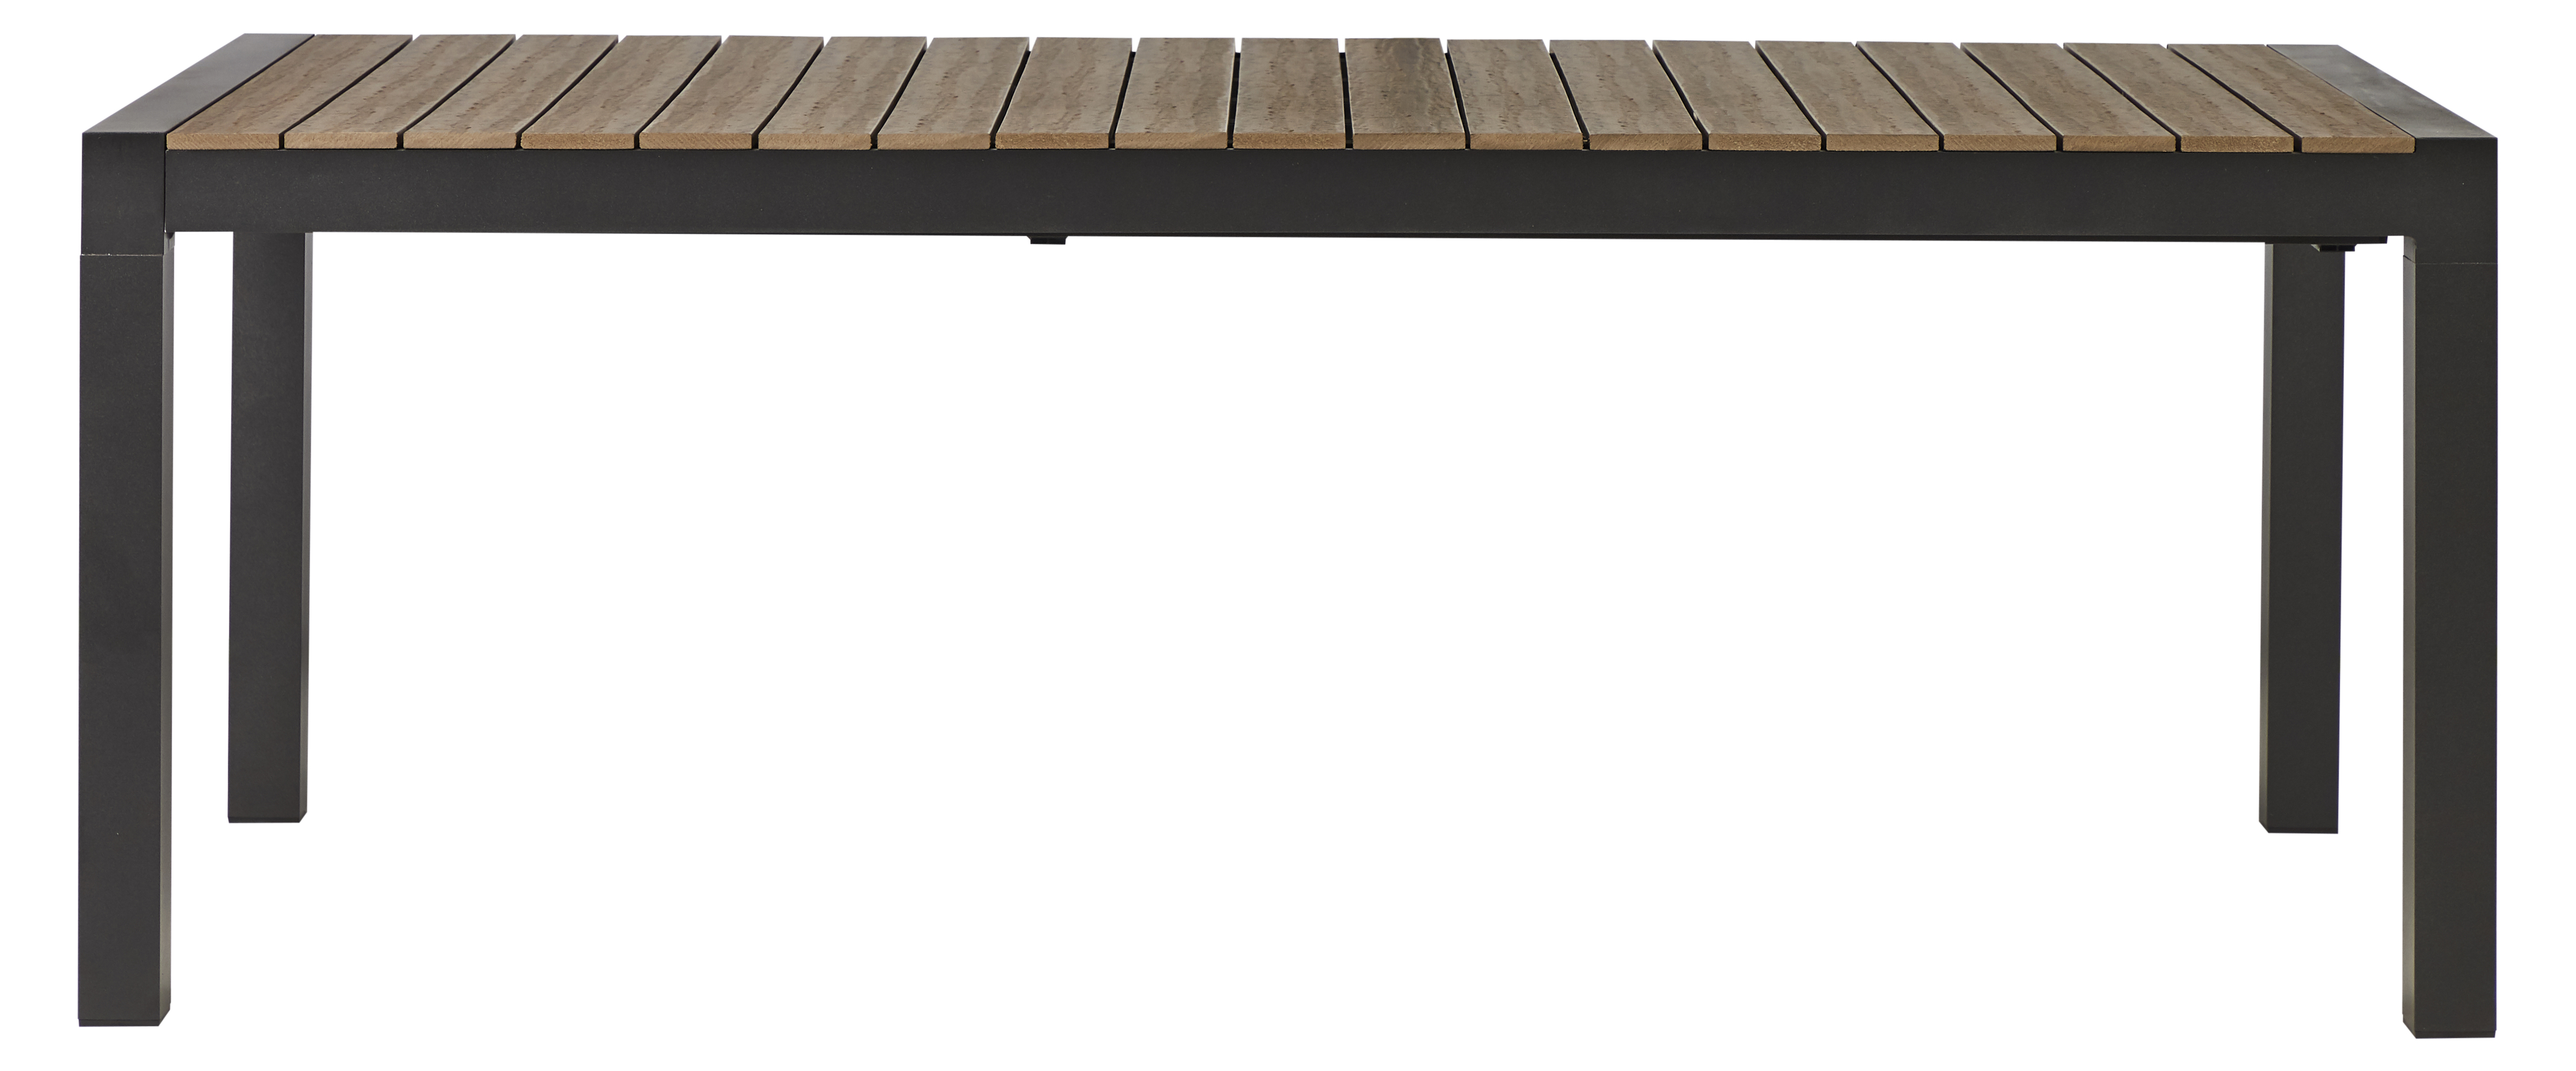 Living Outdoor - Lyoe Garden Table 205/275 x 100 cm - Aluminium/Polywood - Black/Brown Douglas (48685)